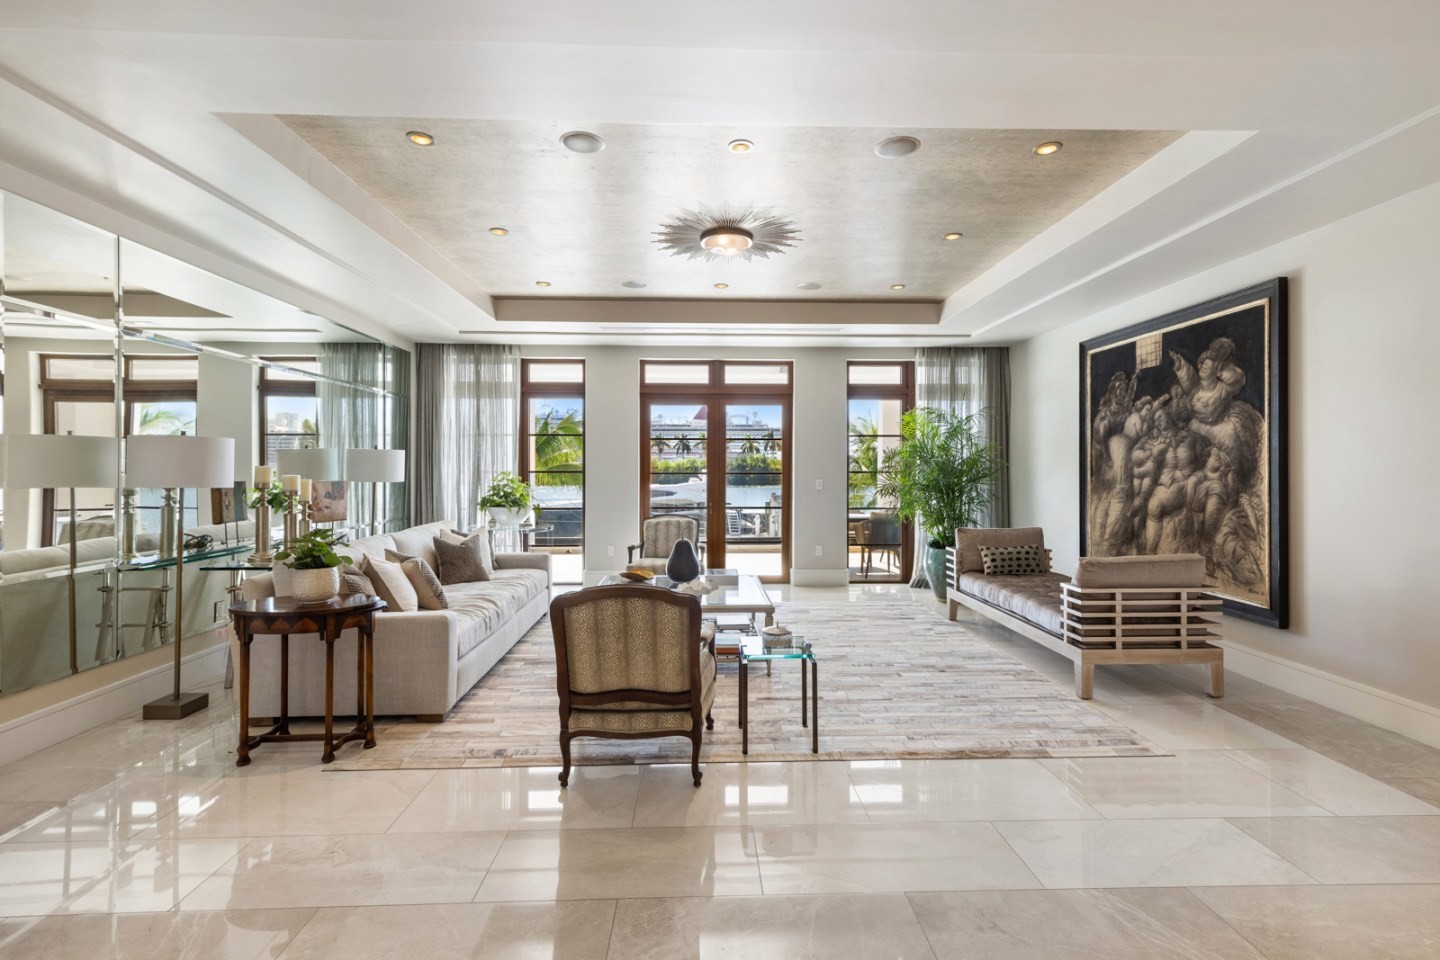 Floyd Mayweather compra mansão em Miami por R$ 94 milhões (Foto: Divulgação/Douglas Elliman Real Estate)